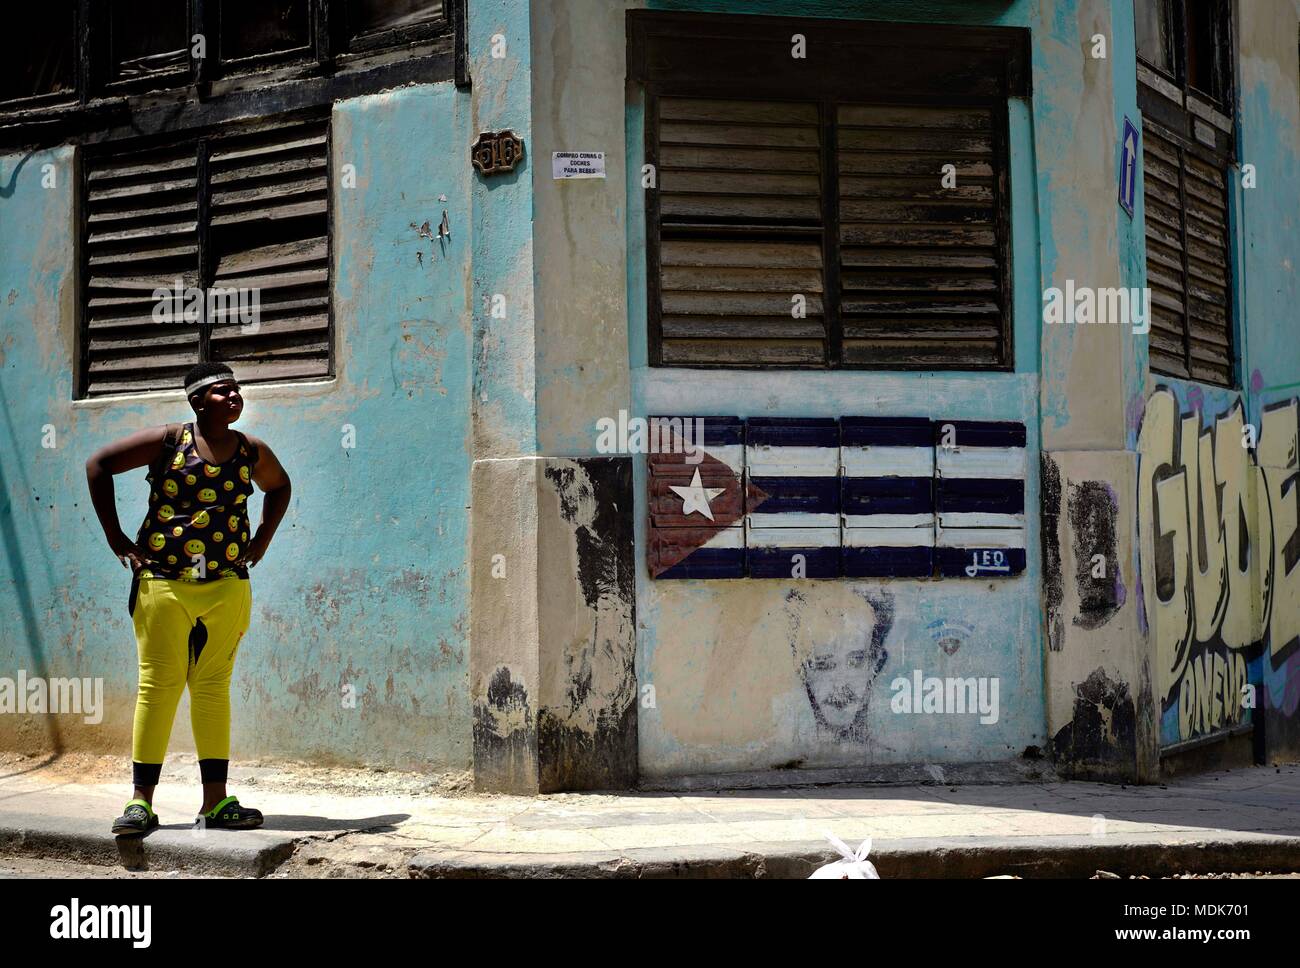 19 April 2018, Kuba, Havanna: Ein Junge steht außerhalb ein Haus, dessen Fassade zeigt die kubanische Flagge. Kuba's New Leader Miguel Diaz-Canel ist der erste Führer nicht den Namen Castro in 60 Jahren zu tragen. Foto: Eliana Aponte/dpa Stockfoto